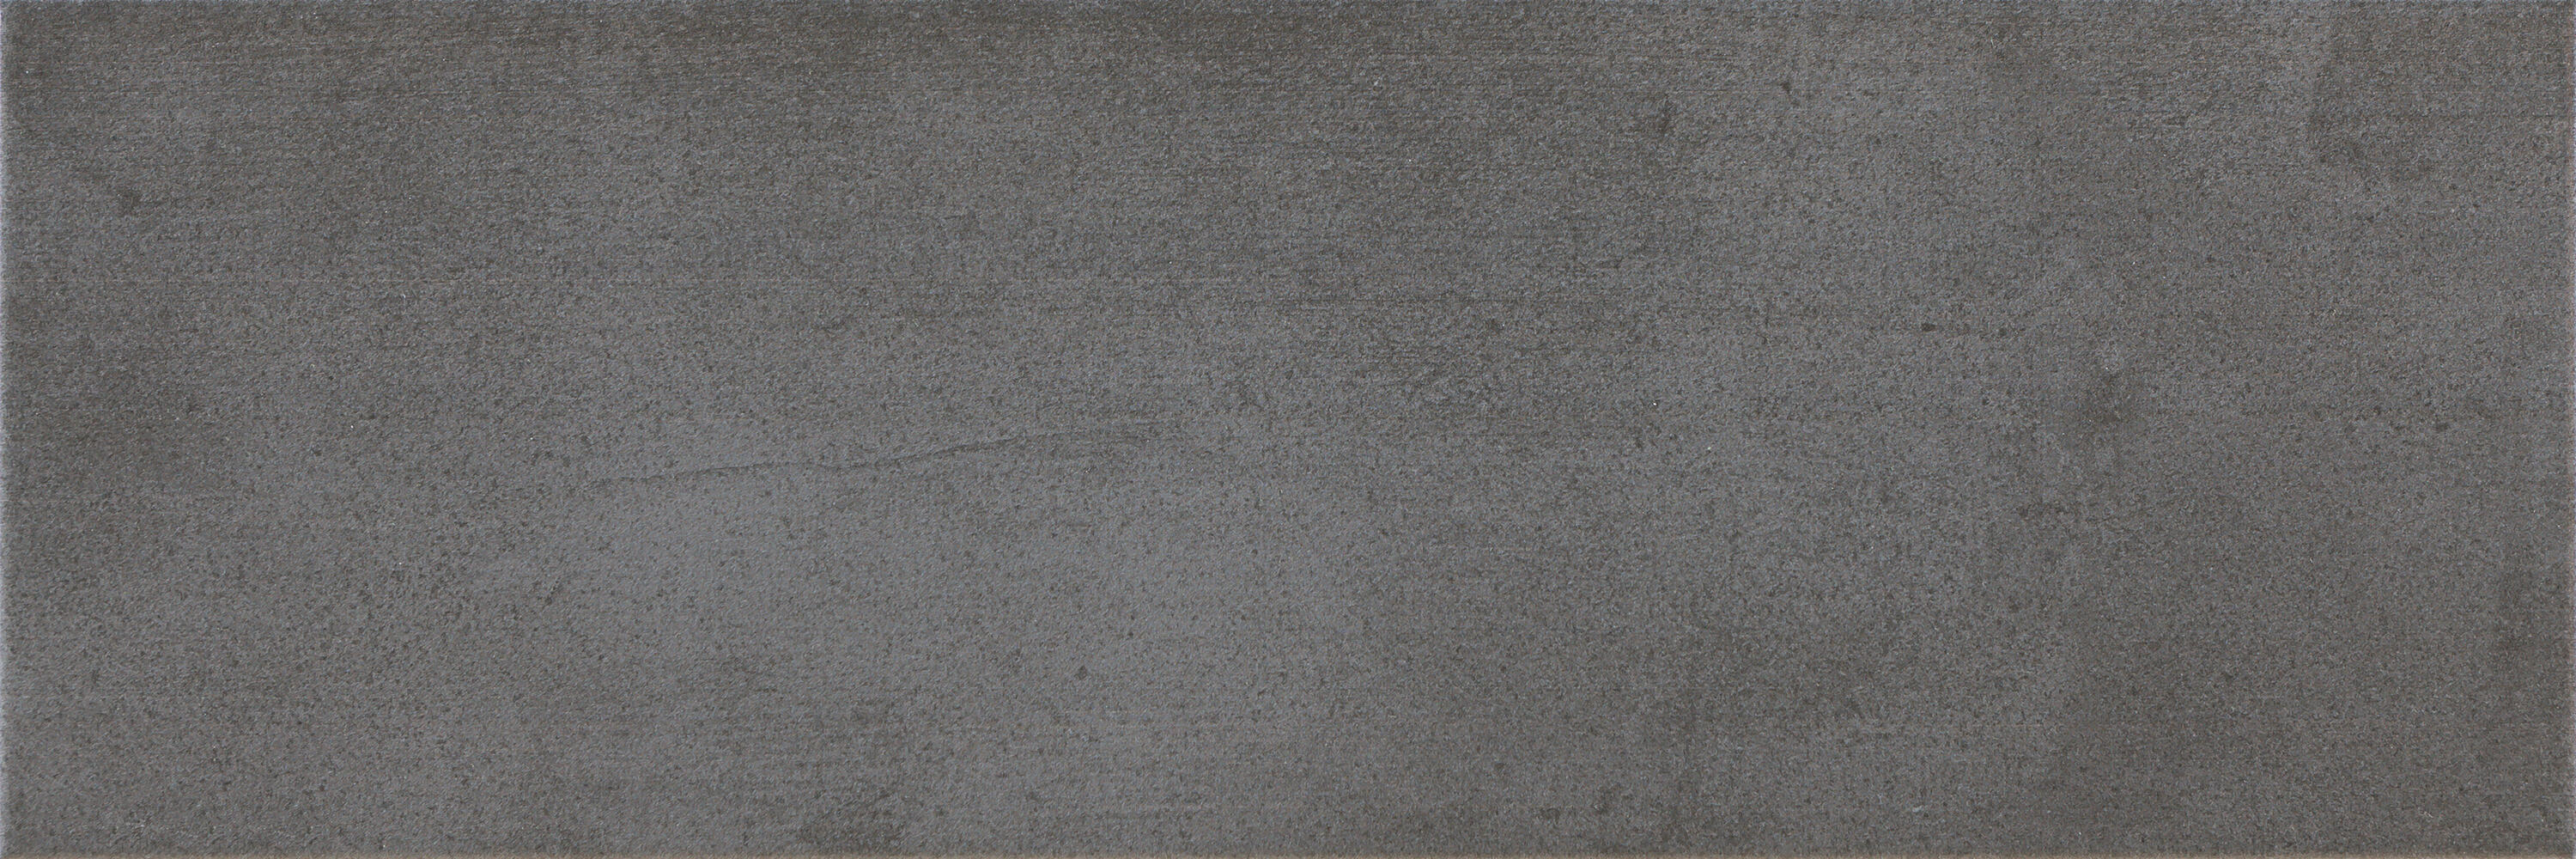 Azulejo cerámico laval efecto cemento gris 20x60 cm